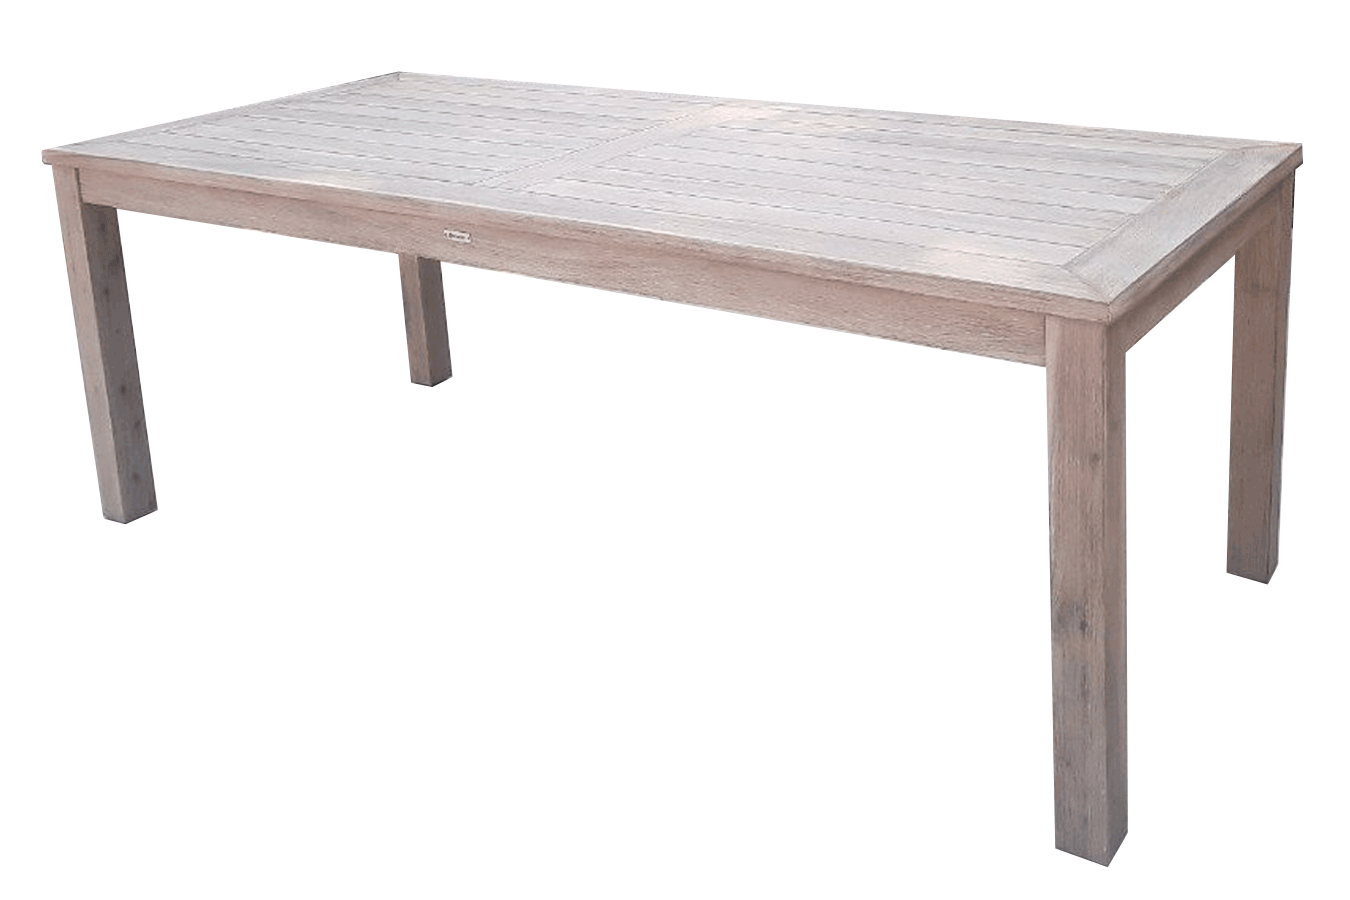 KIA, стол деревянный обеденный 210х90см